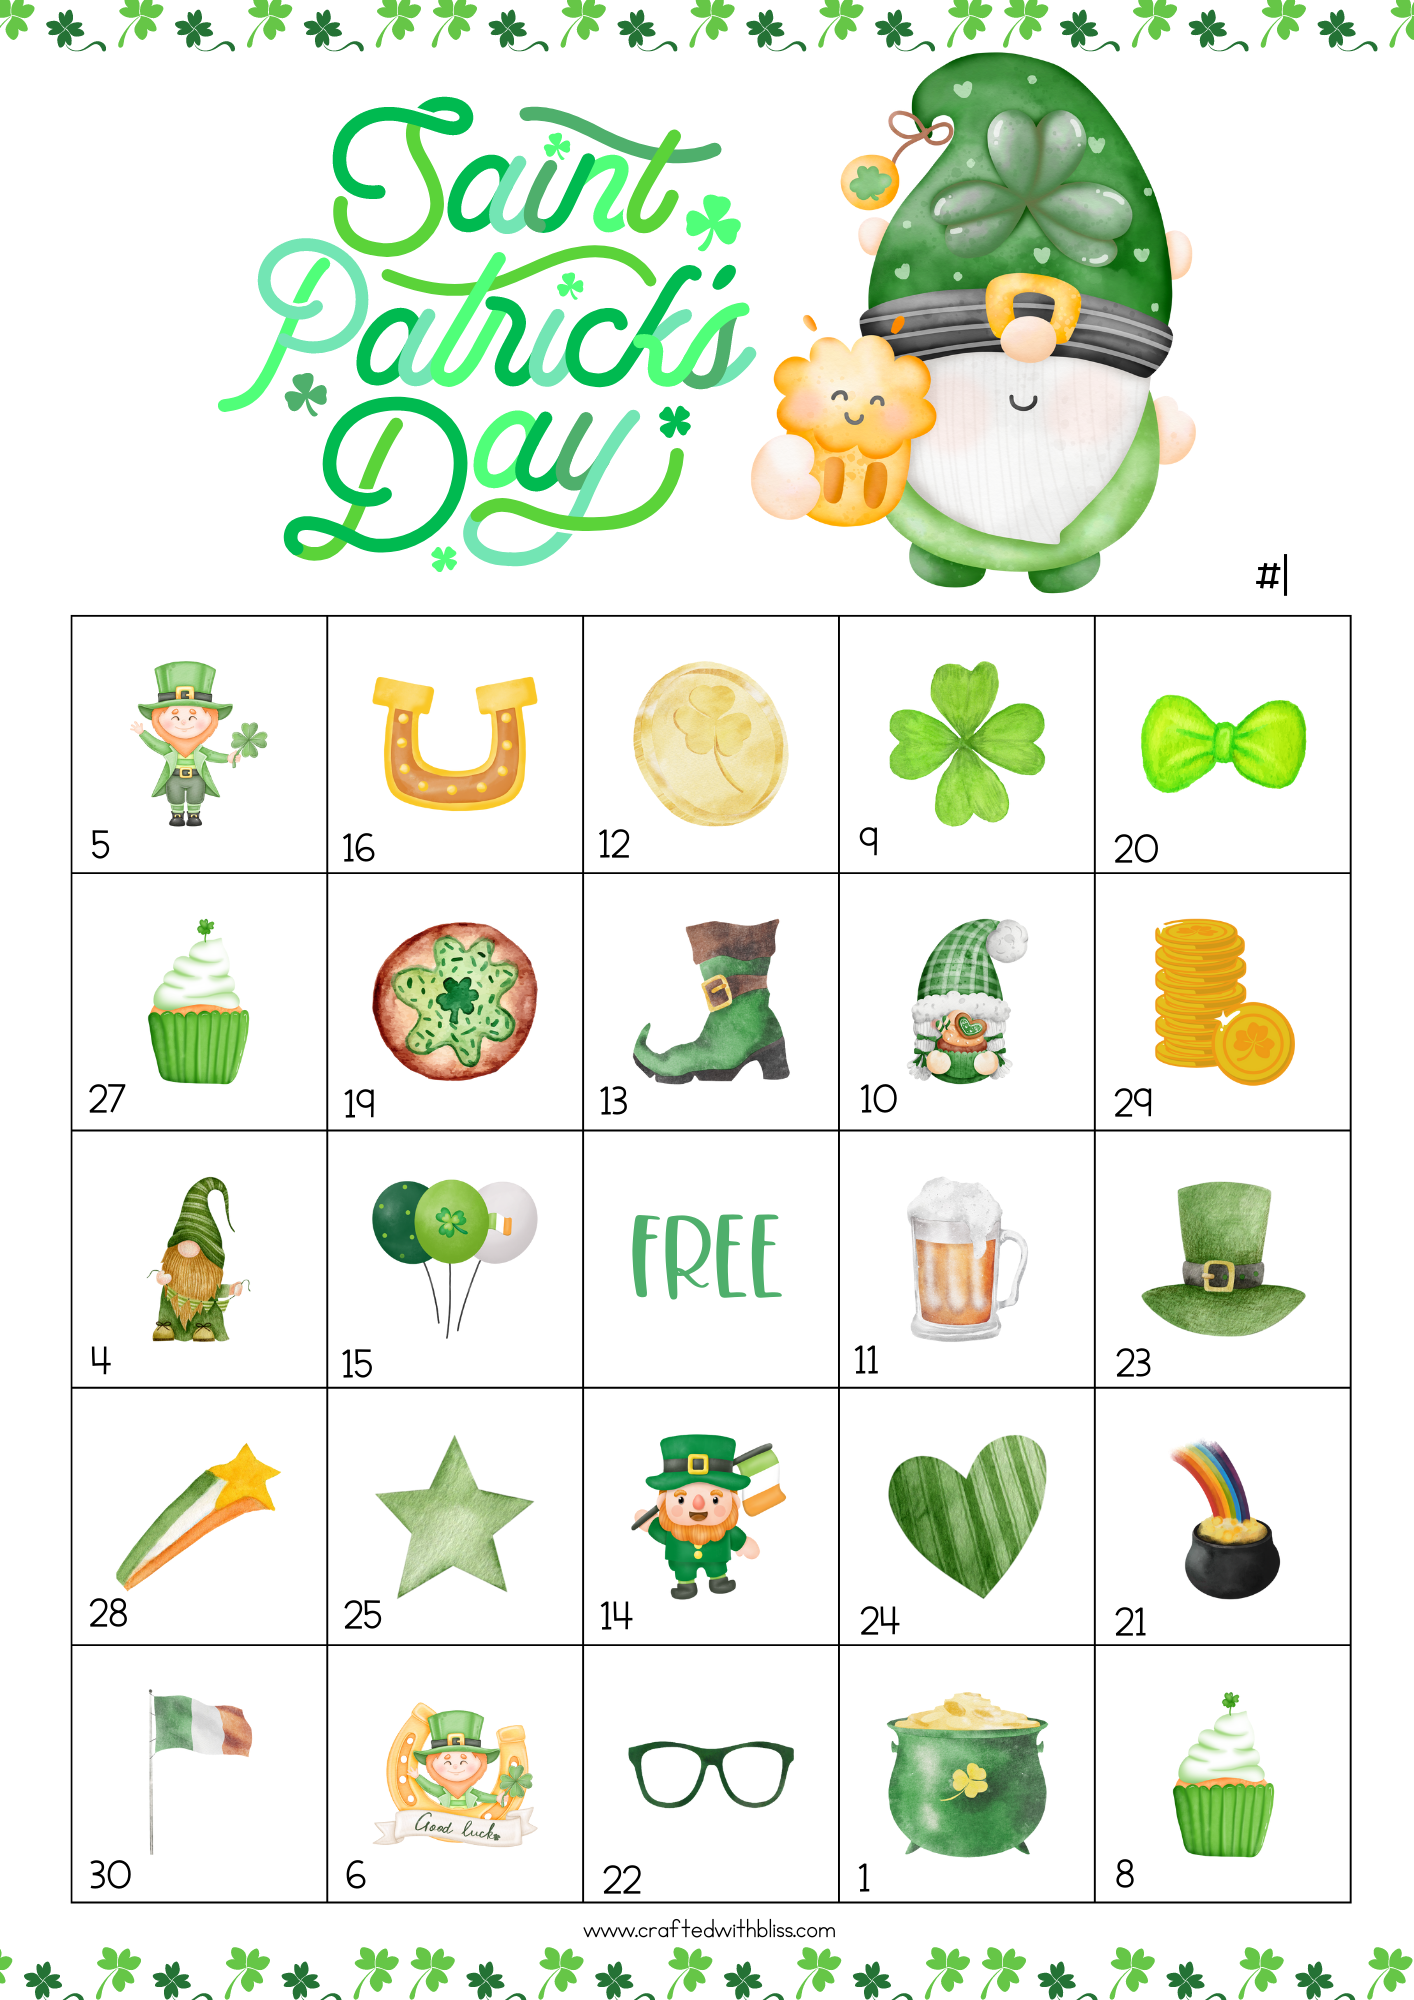 50 St. Patrick's Day Bingo Cards (5x5)